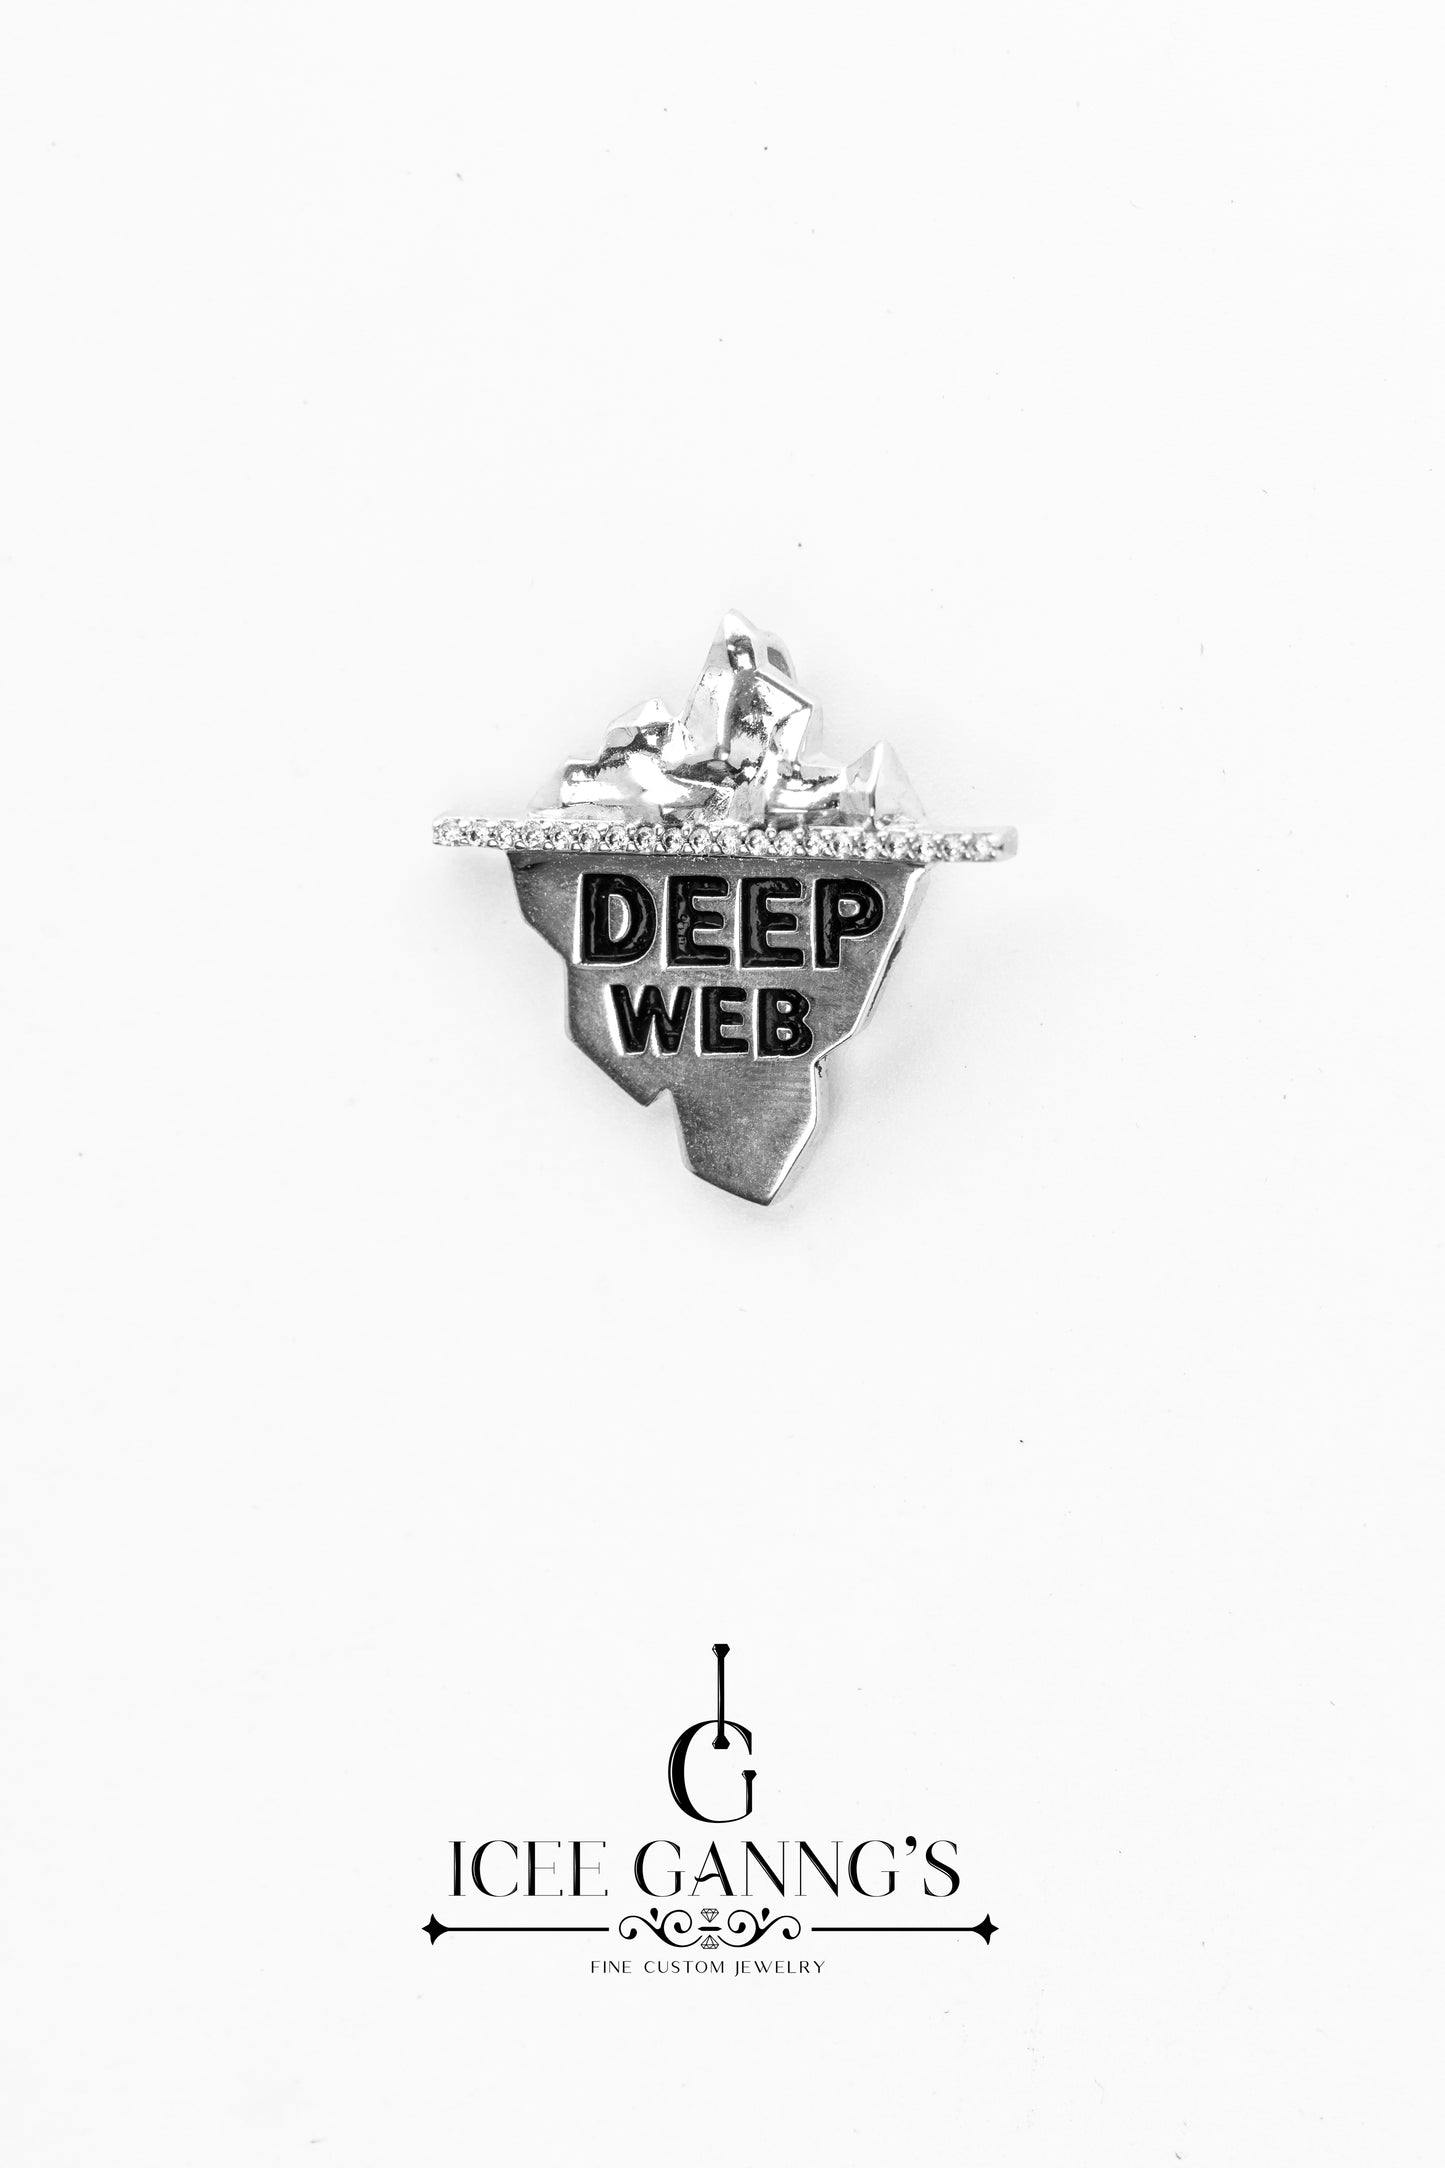 Pingente da Deep Web